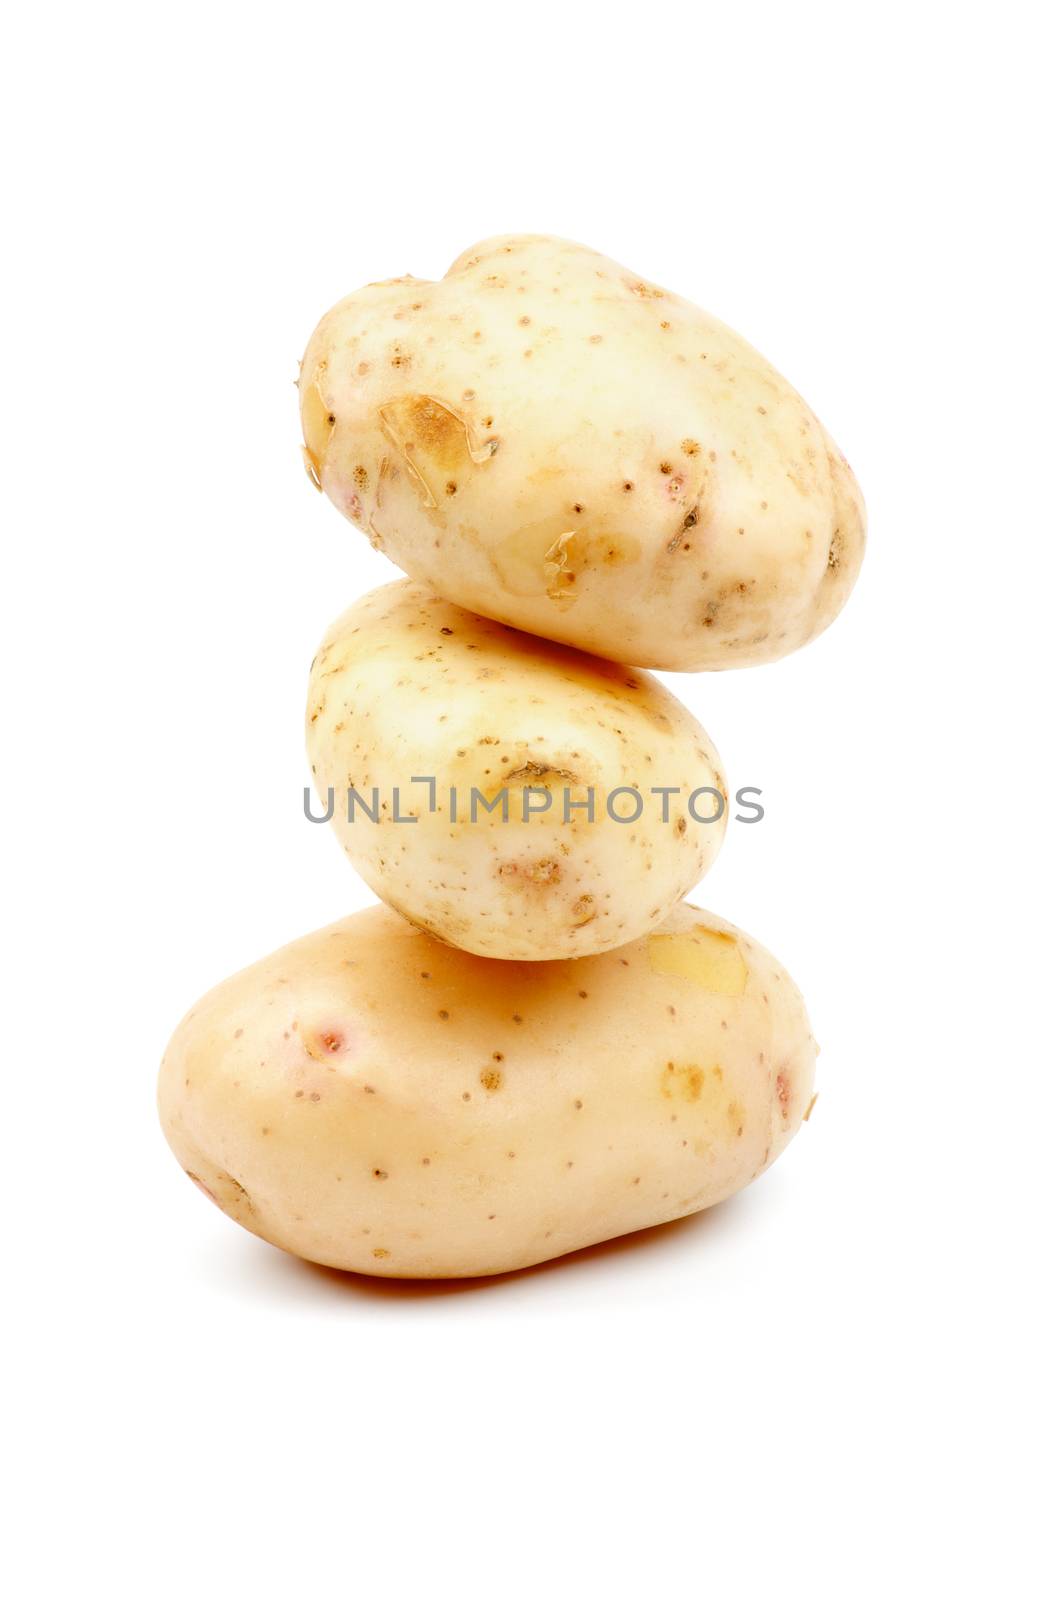 Raw Potato by zhekos